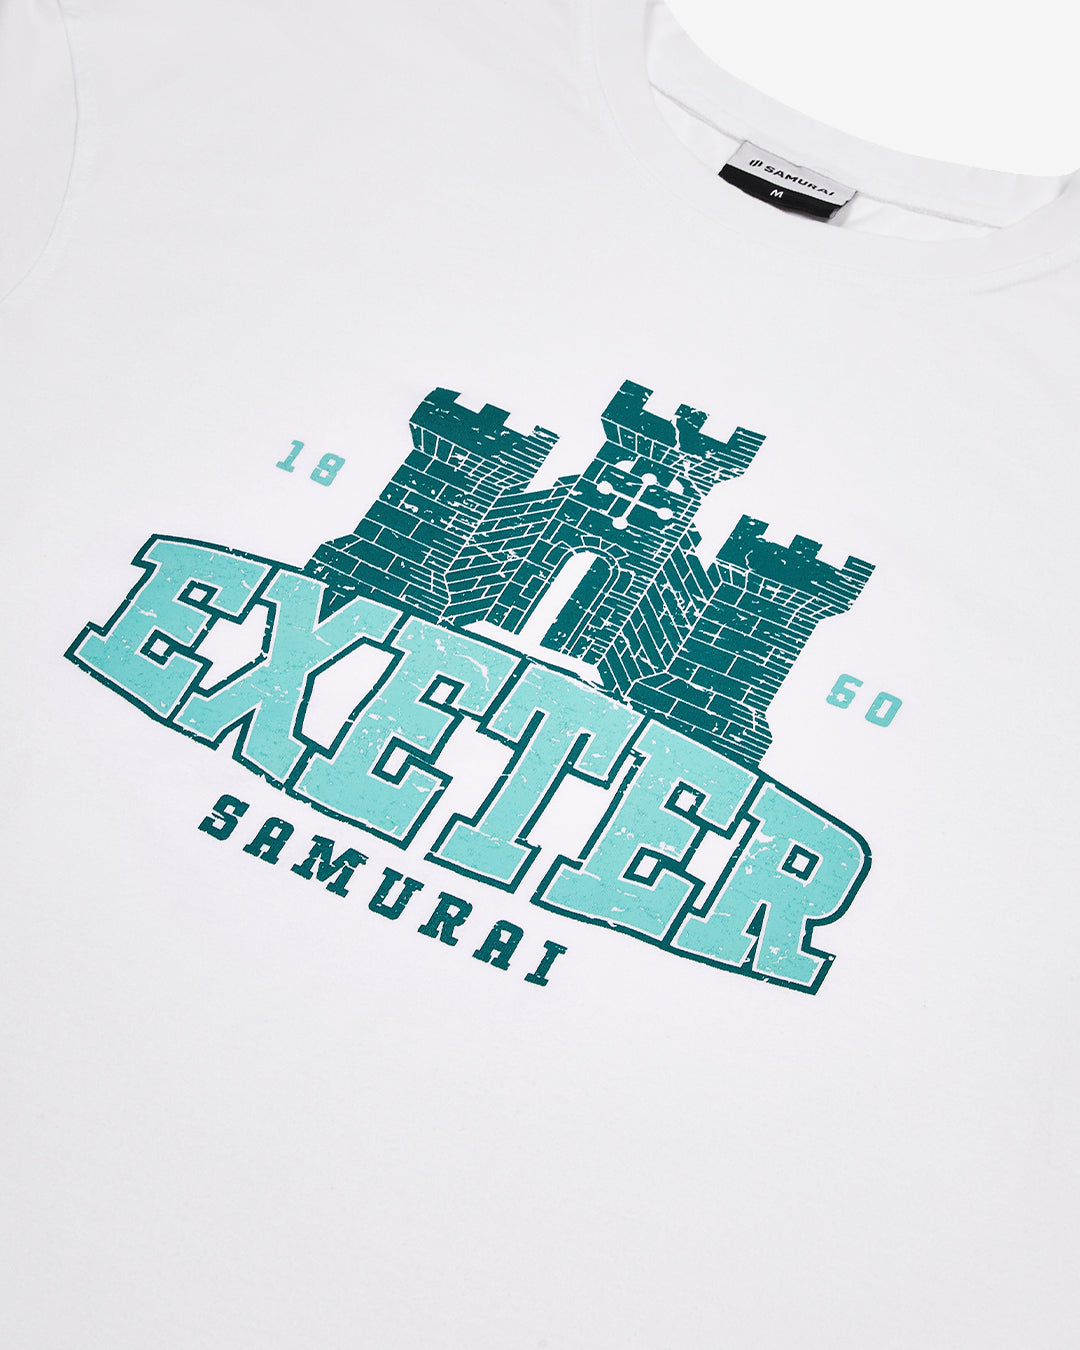 OC: 00-02 - Women's Exeter T-Shirt - White